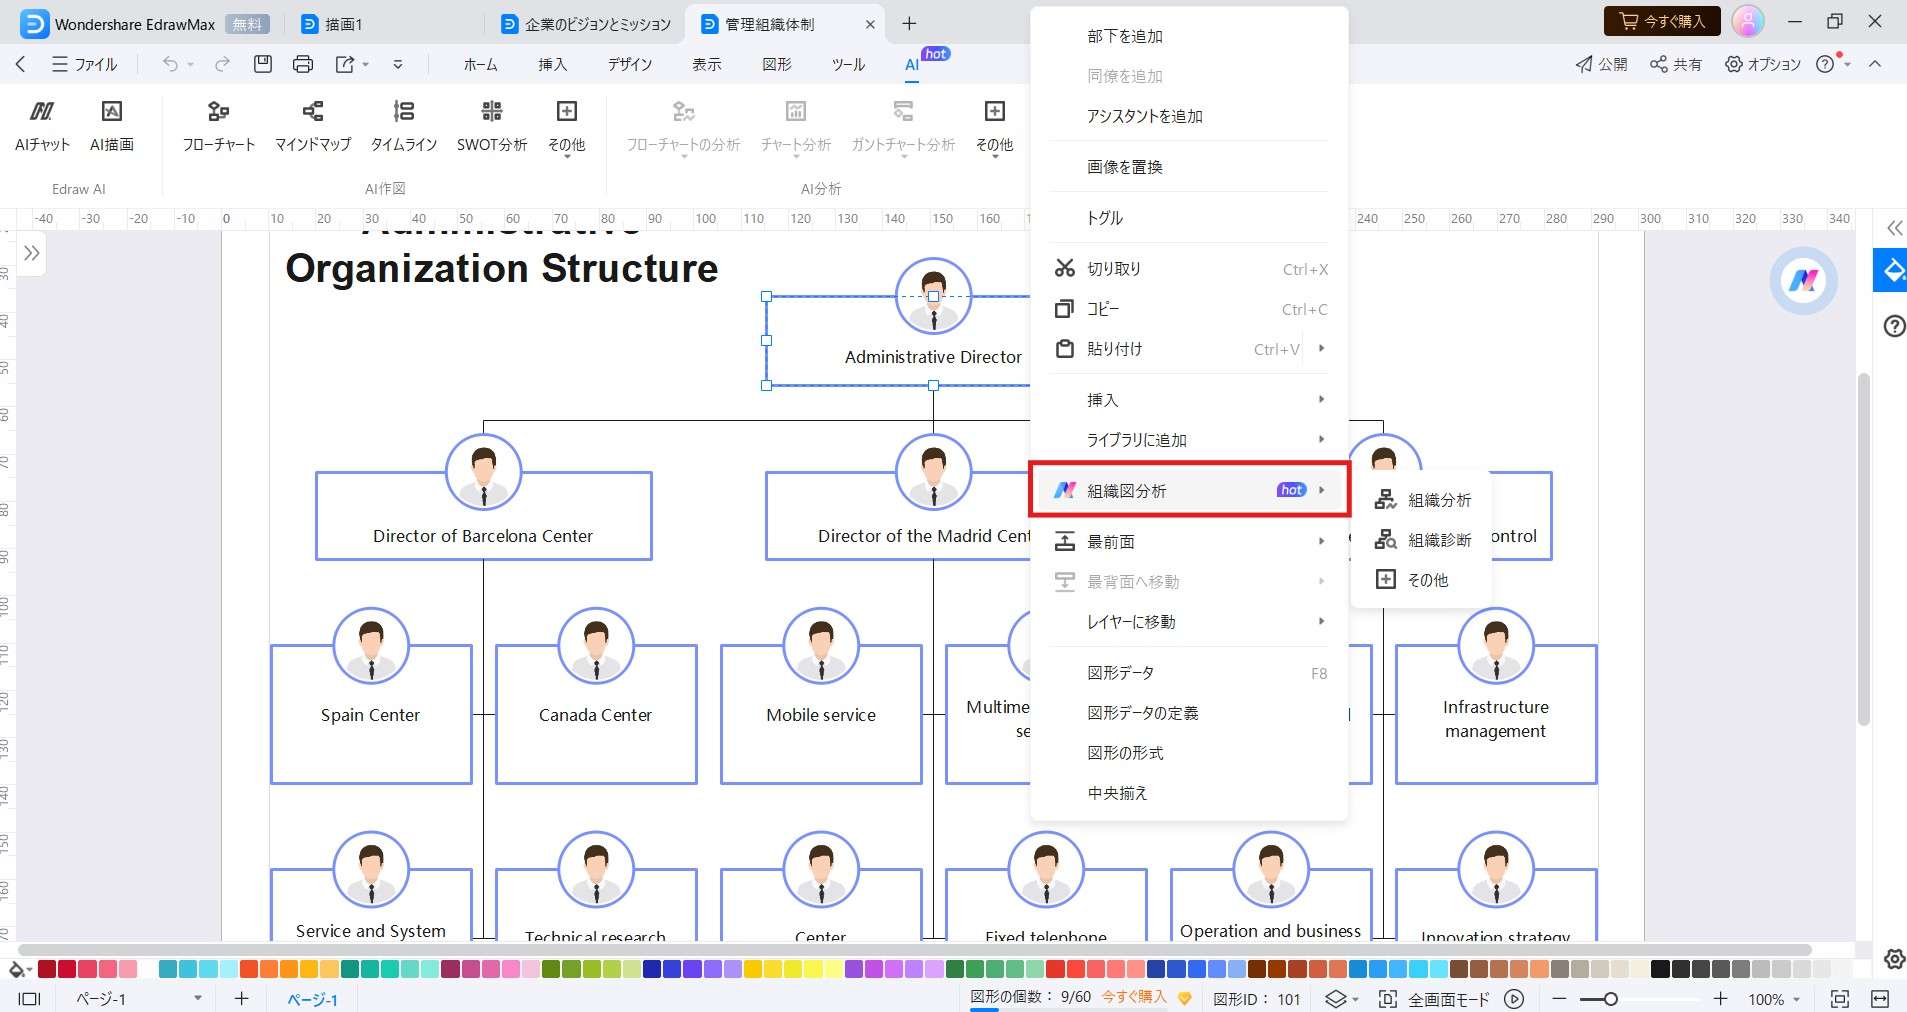 organizational chart analysis 02